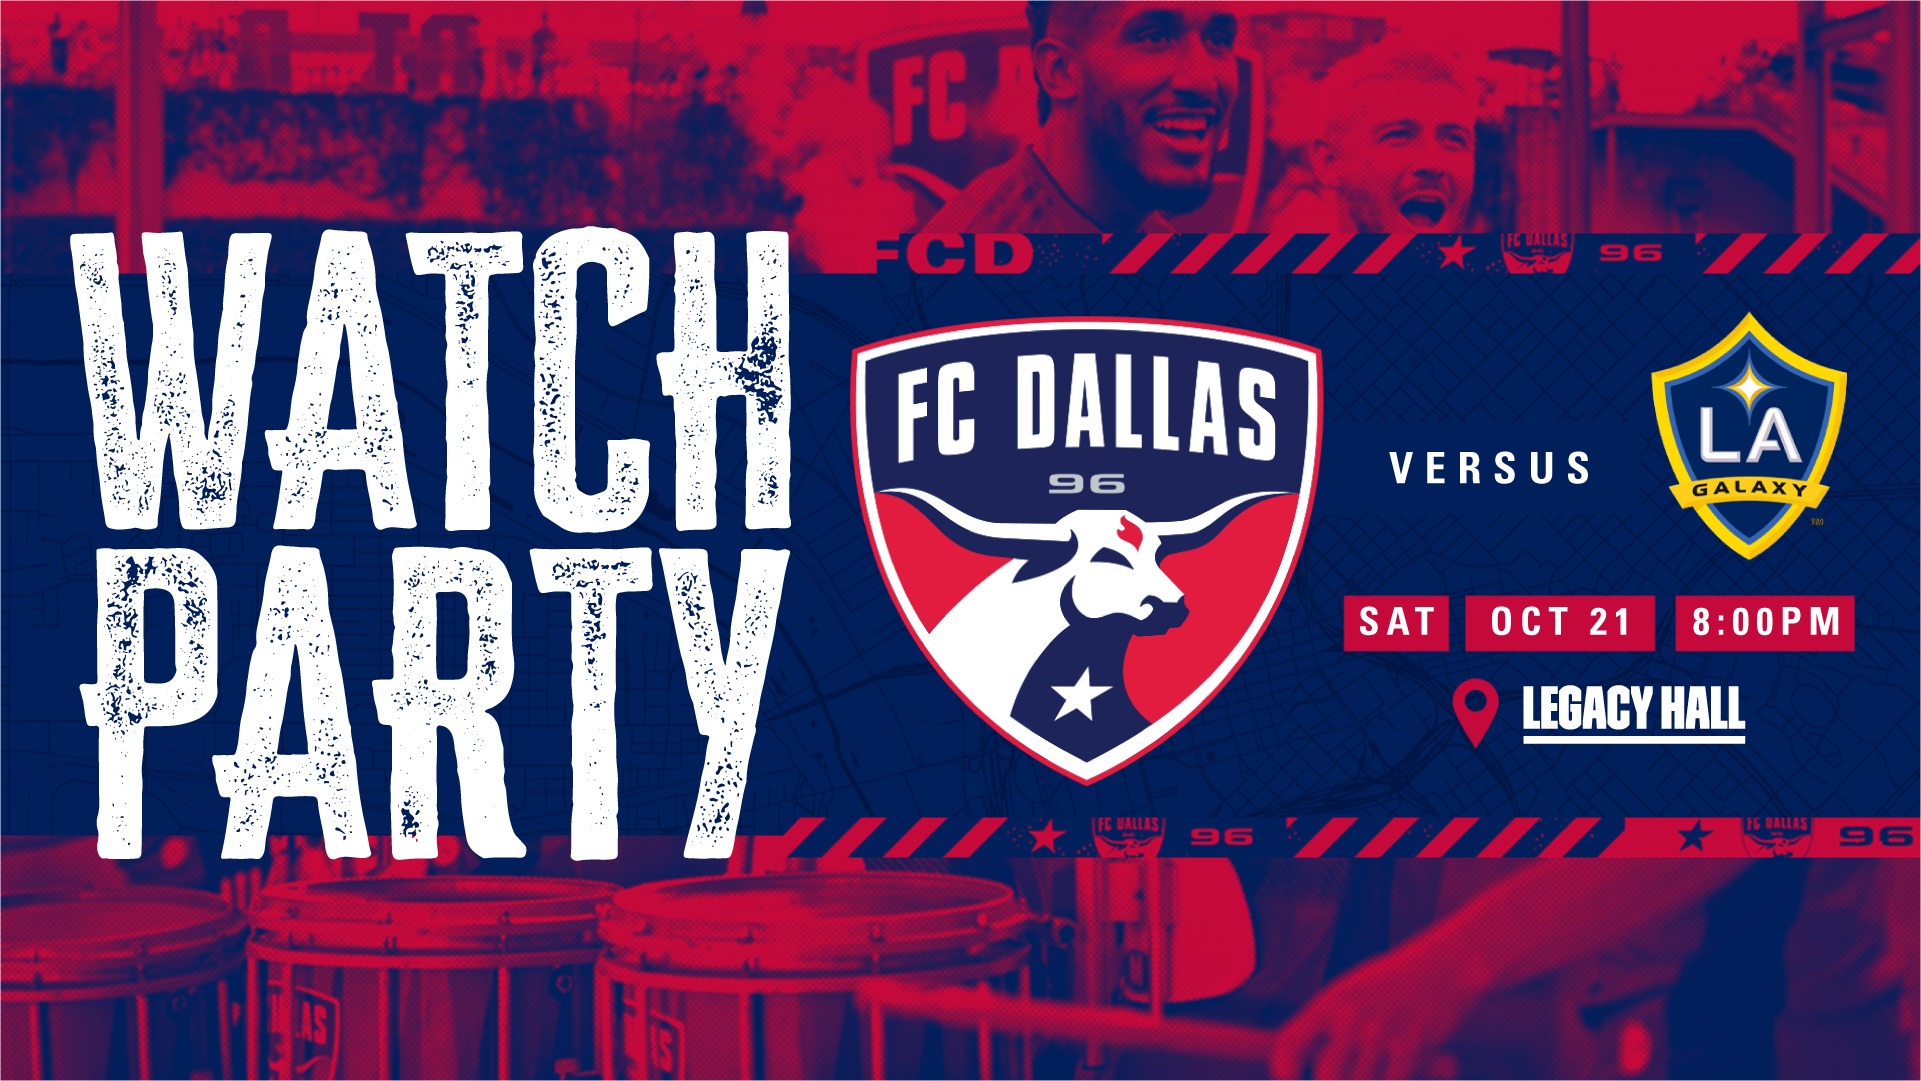 FC Dallas VS LA Galaxy Watch Party